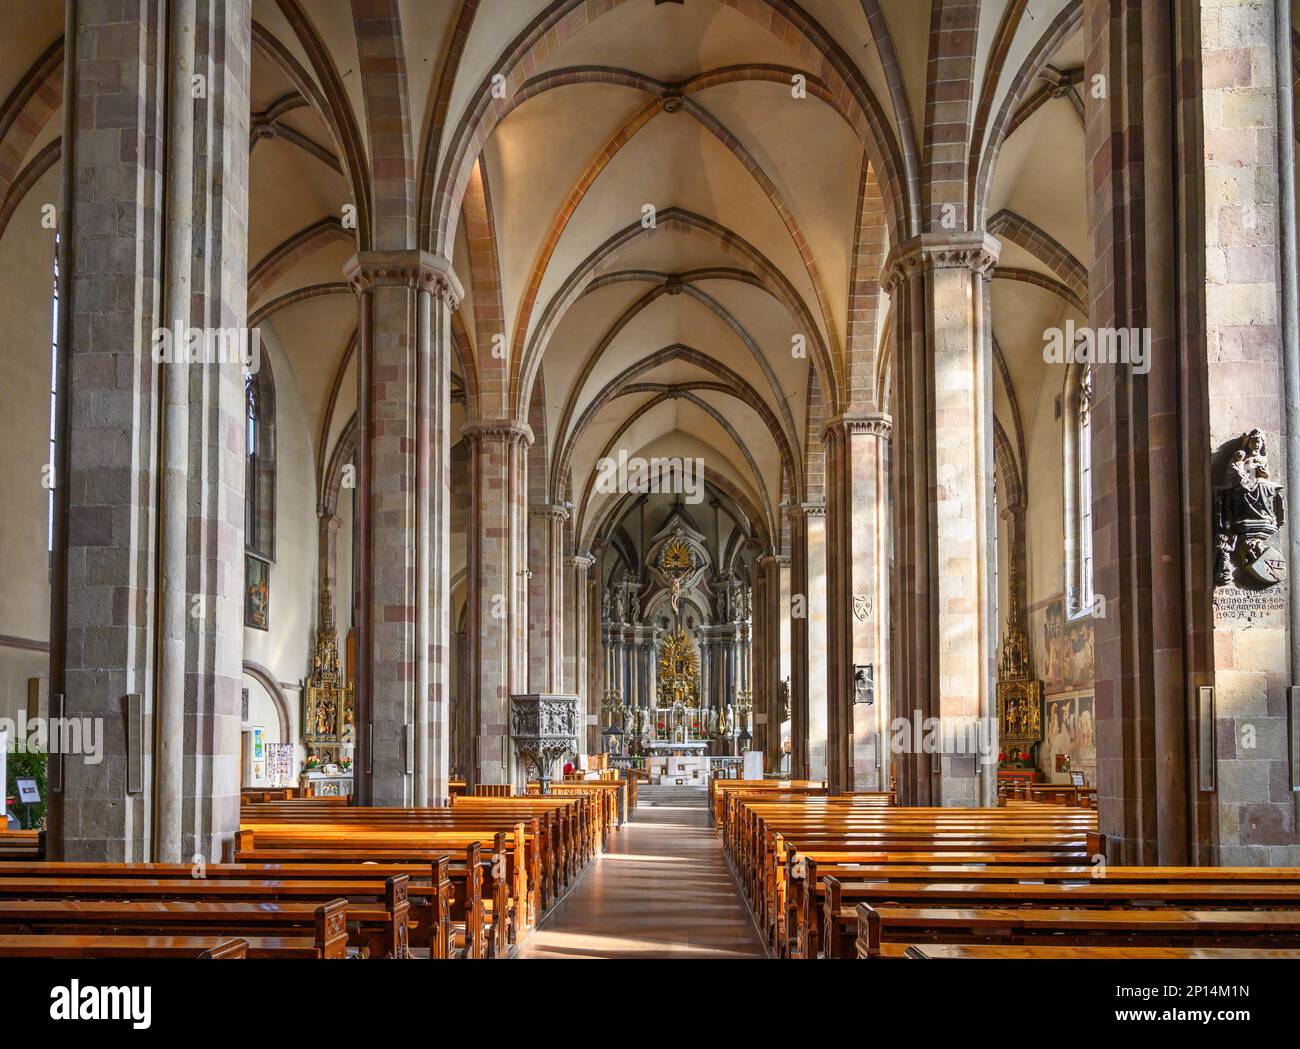 Interno della Cattedrale di Bolzano (Duomo di Bolzano), Bolzano, Italia Foto Stock